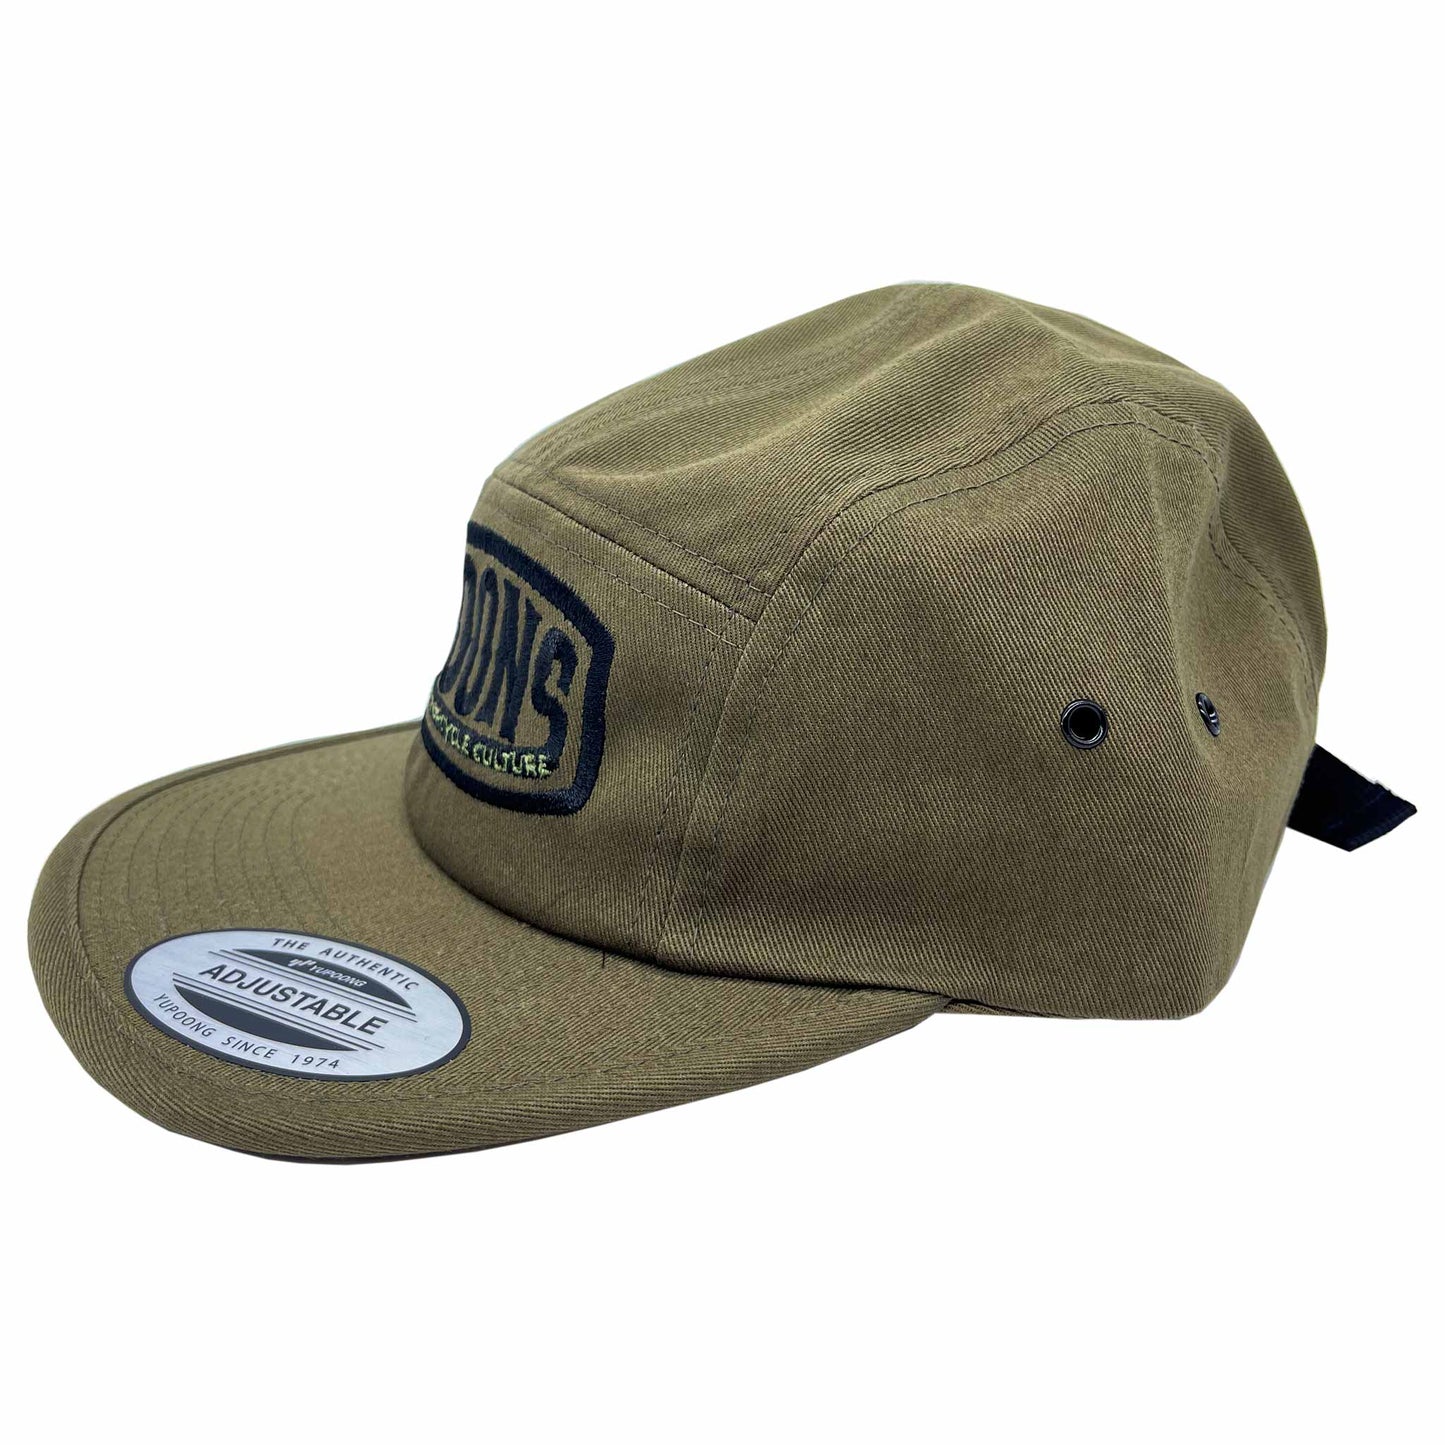 MOONSMC® Vintage Badge Logo Olive 5 Panel Hat